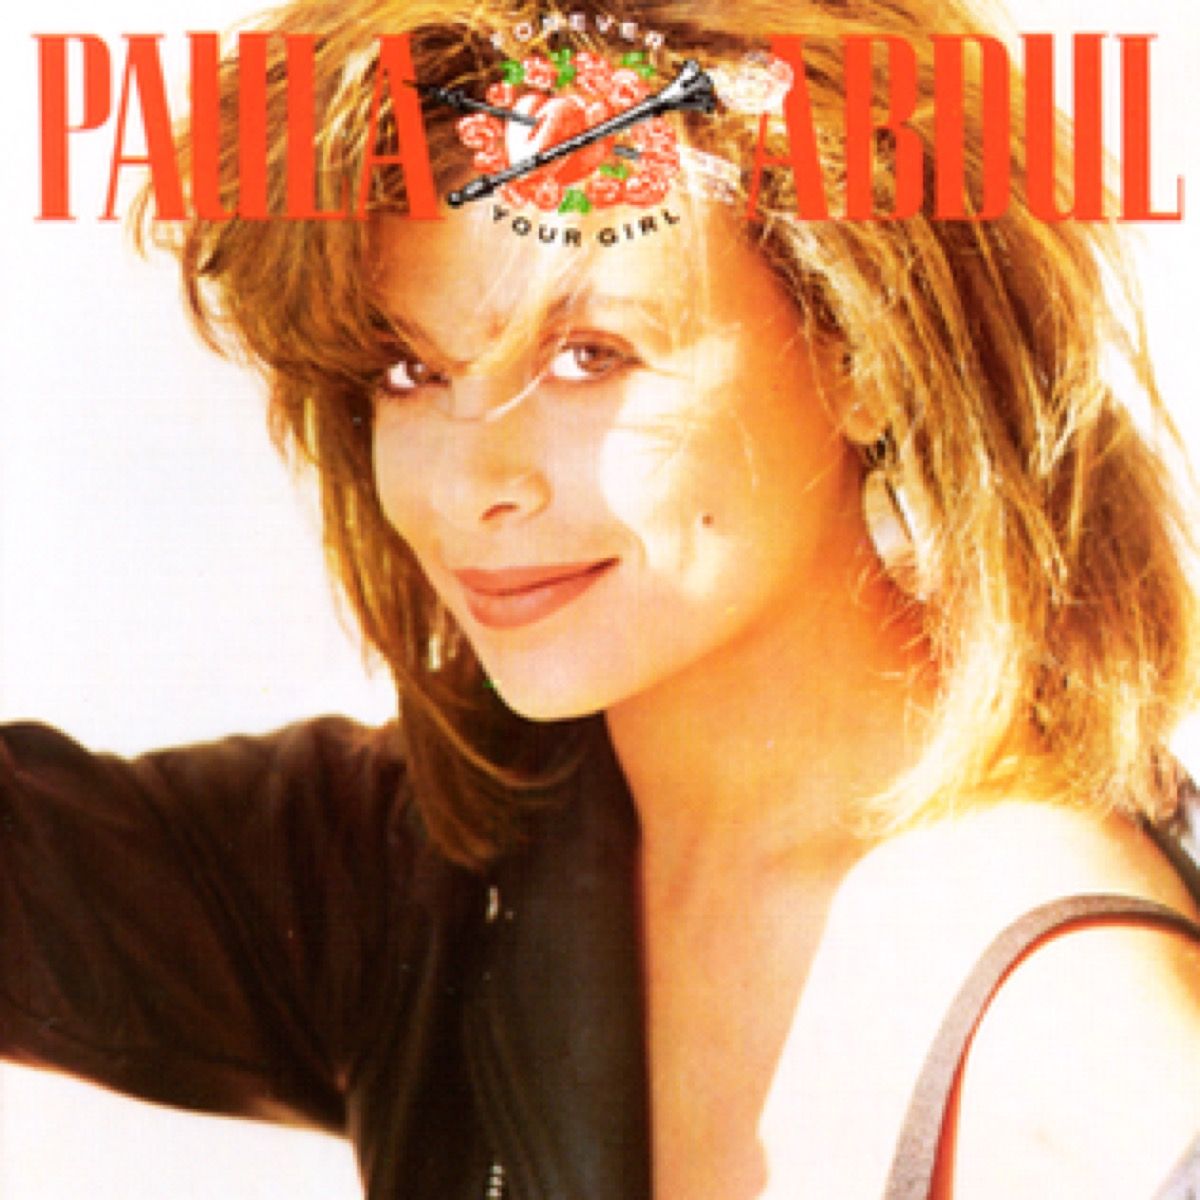 Forever Your Girl av Paula Abdul albumkunst